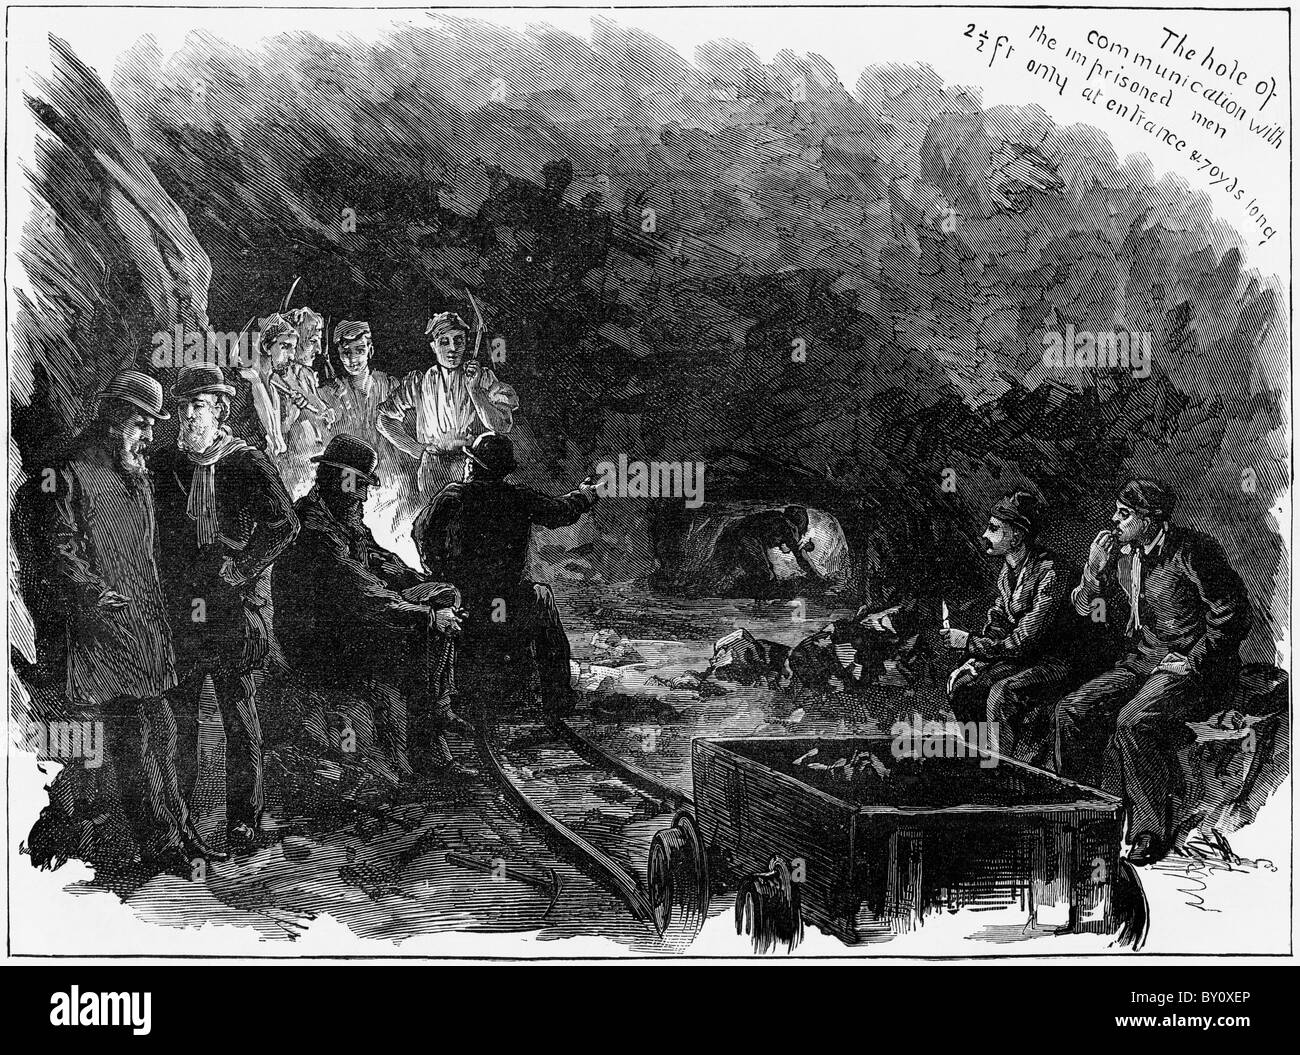 La mine de Troedyrhiw sauvée des hommes de la mine inondée de rester coincés pendant 10 jours gravure datée du 28e Apr victorienne 1877 Banque D'Images